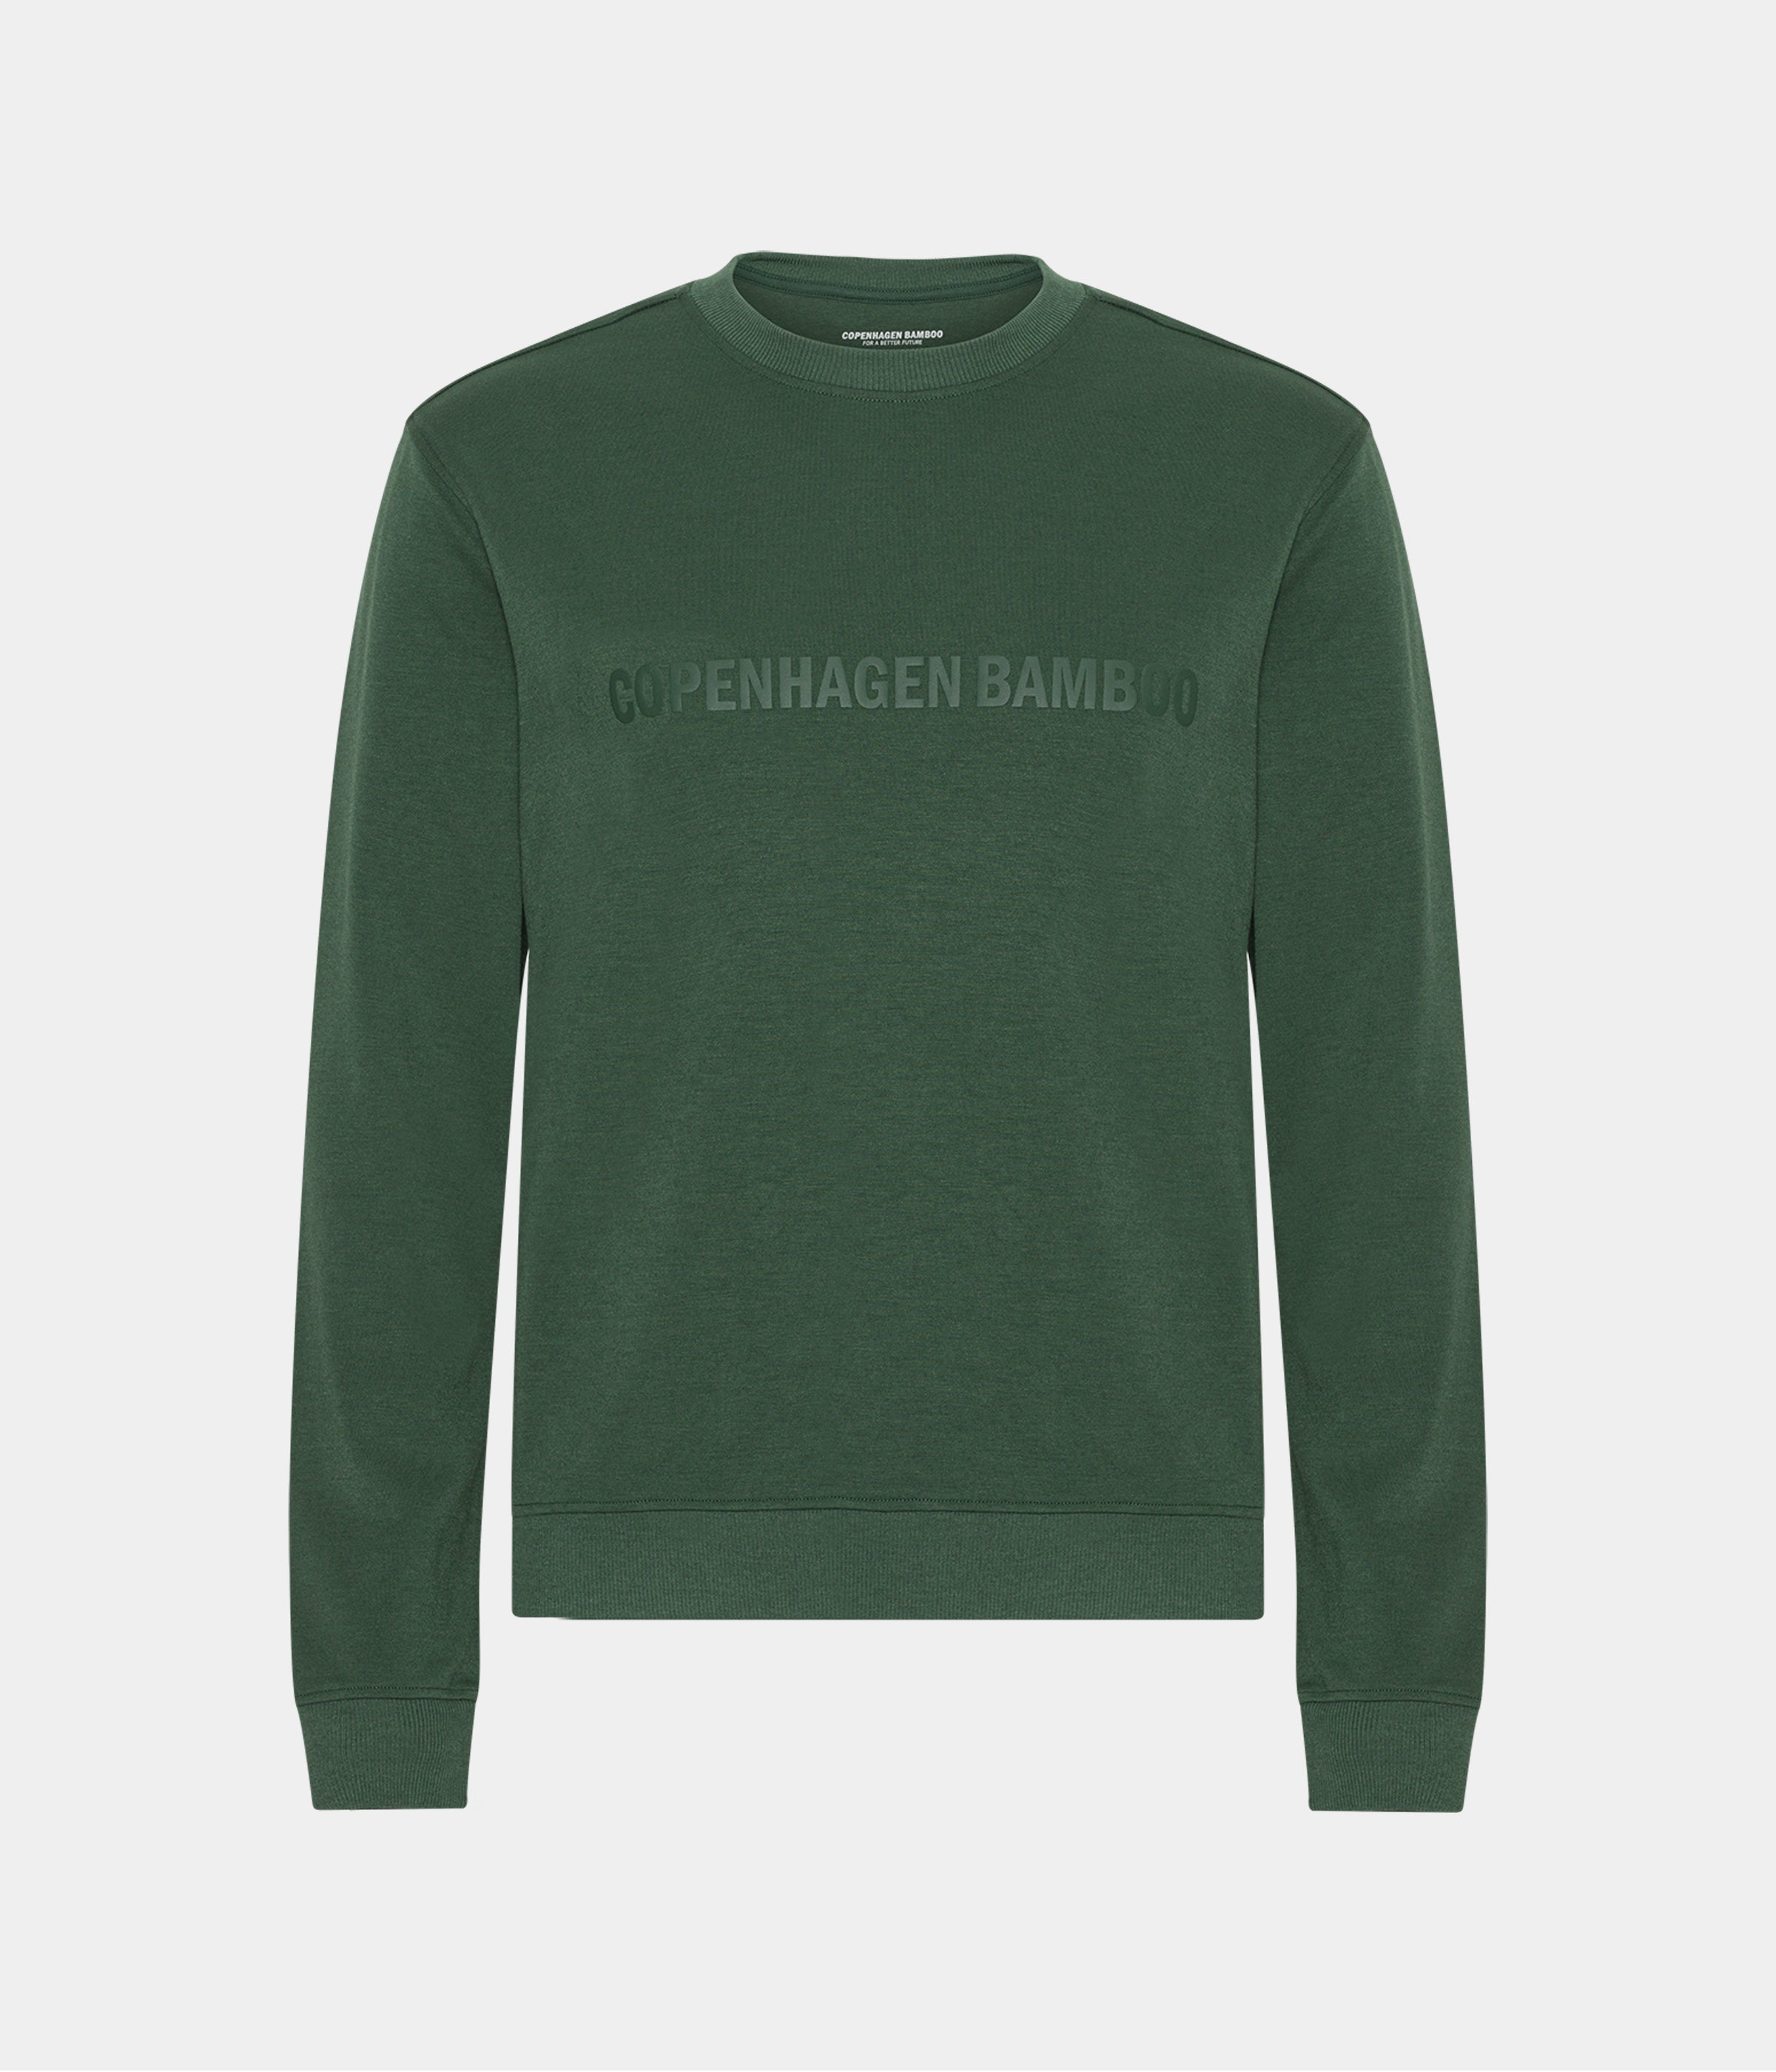 Billede af Grøn bambus sweatshirt til mænd med logo fra Copenhagen Bamboo, S hos Copenhagen Bamboo